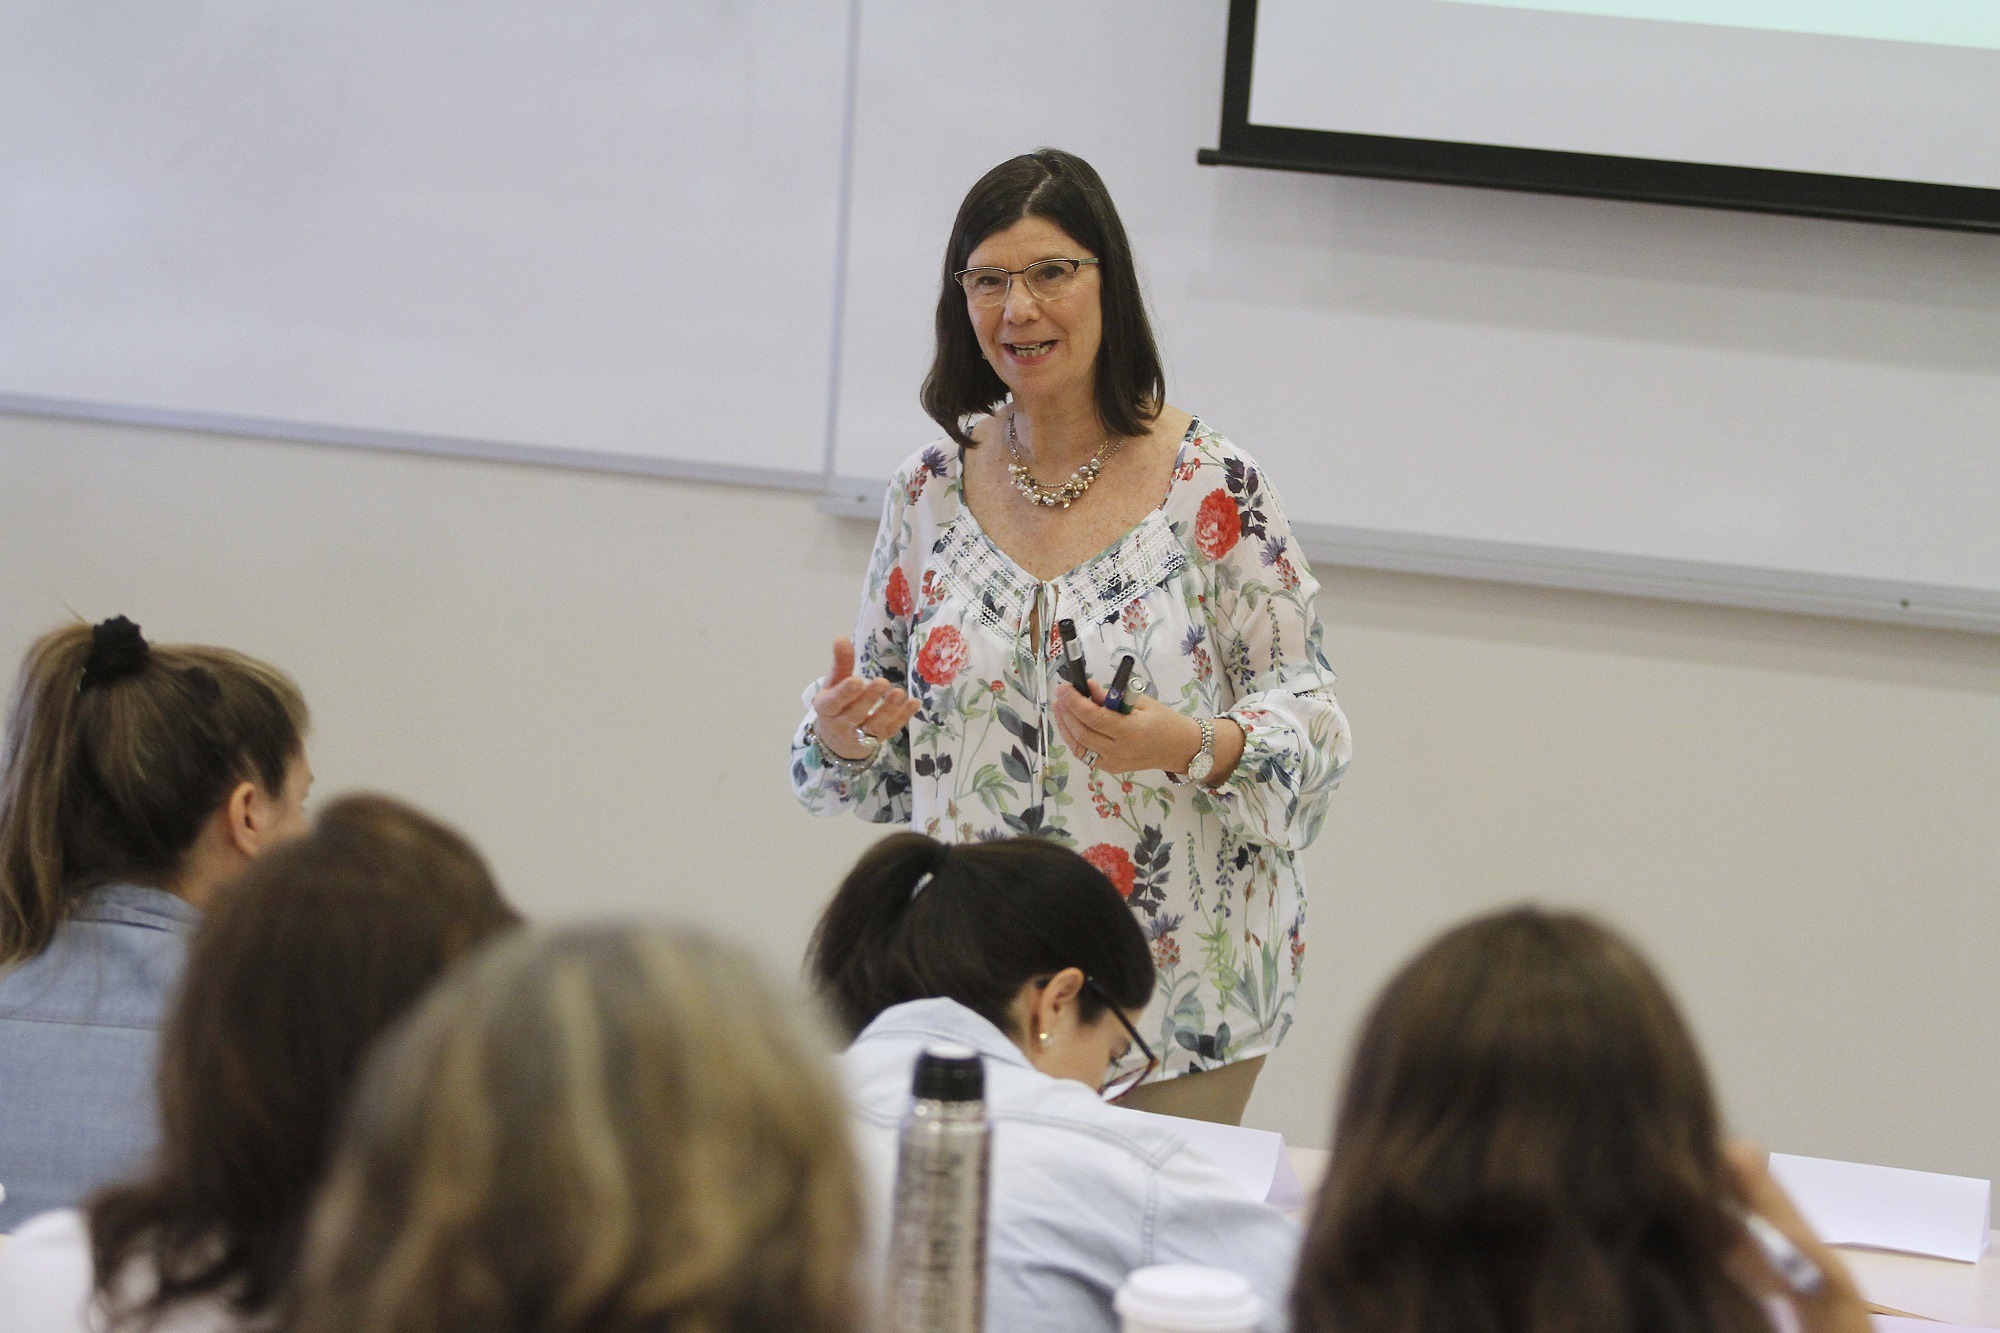 La profesora argentina Patrícia Aréchaga dictando un curso de Mediación.